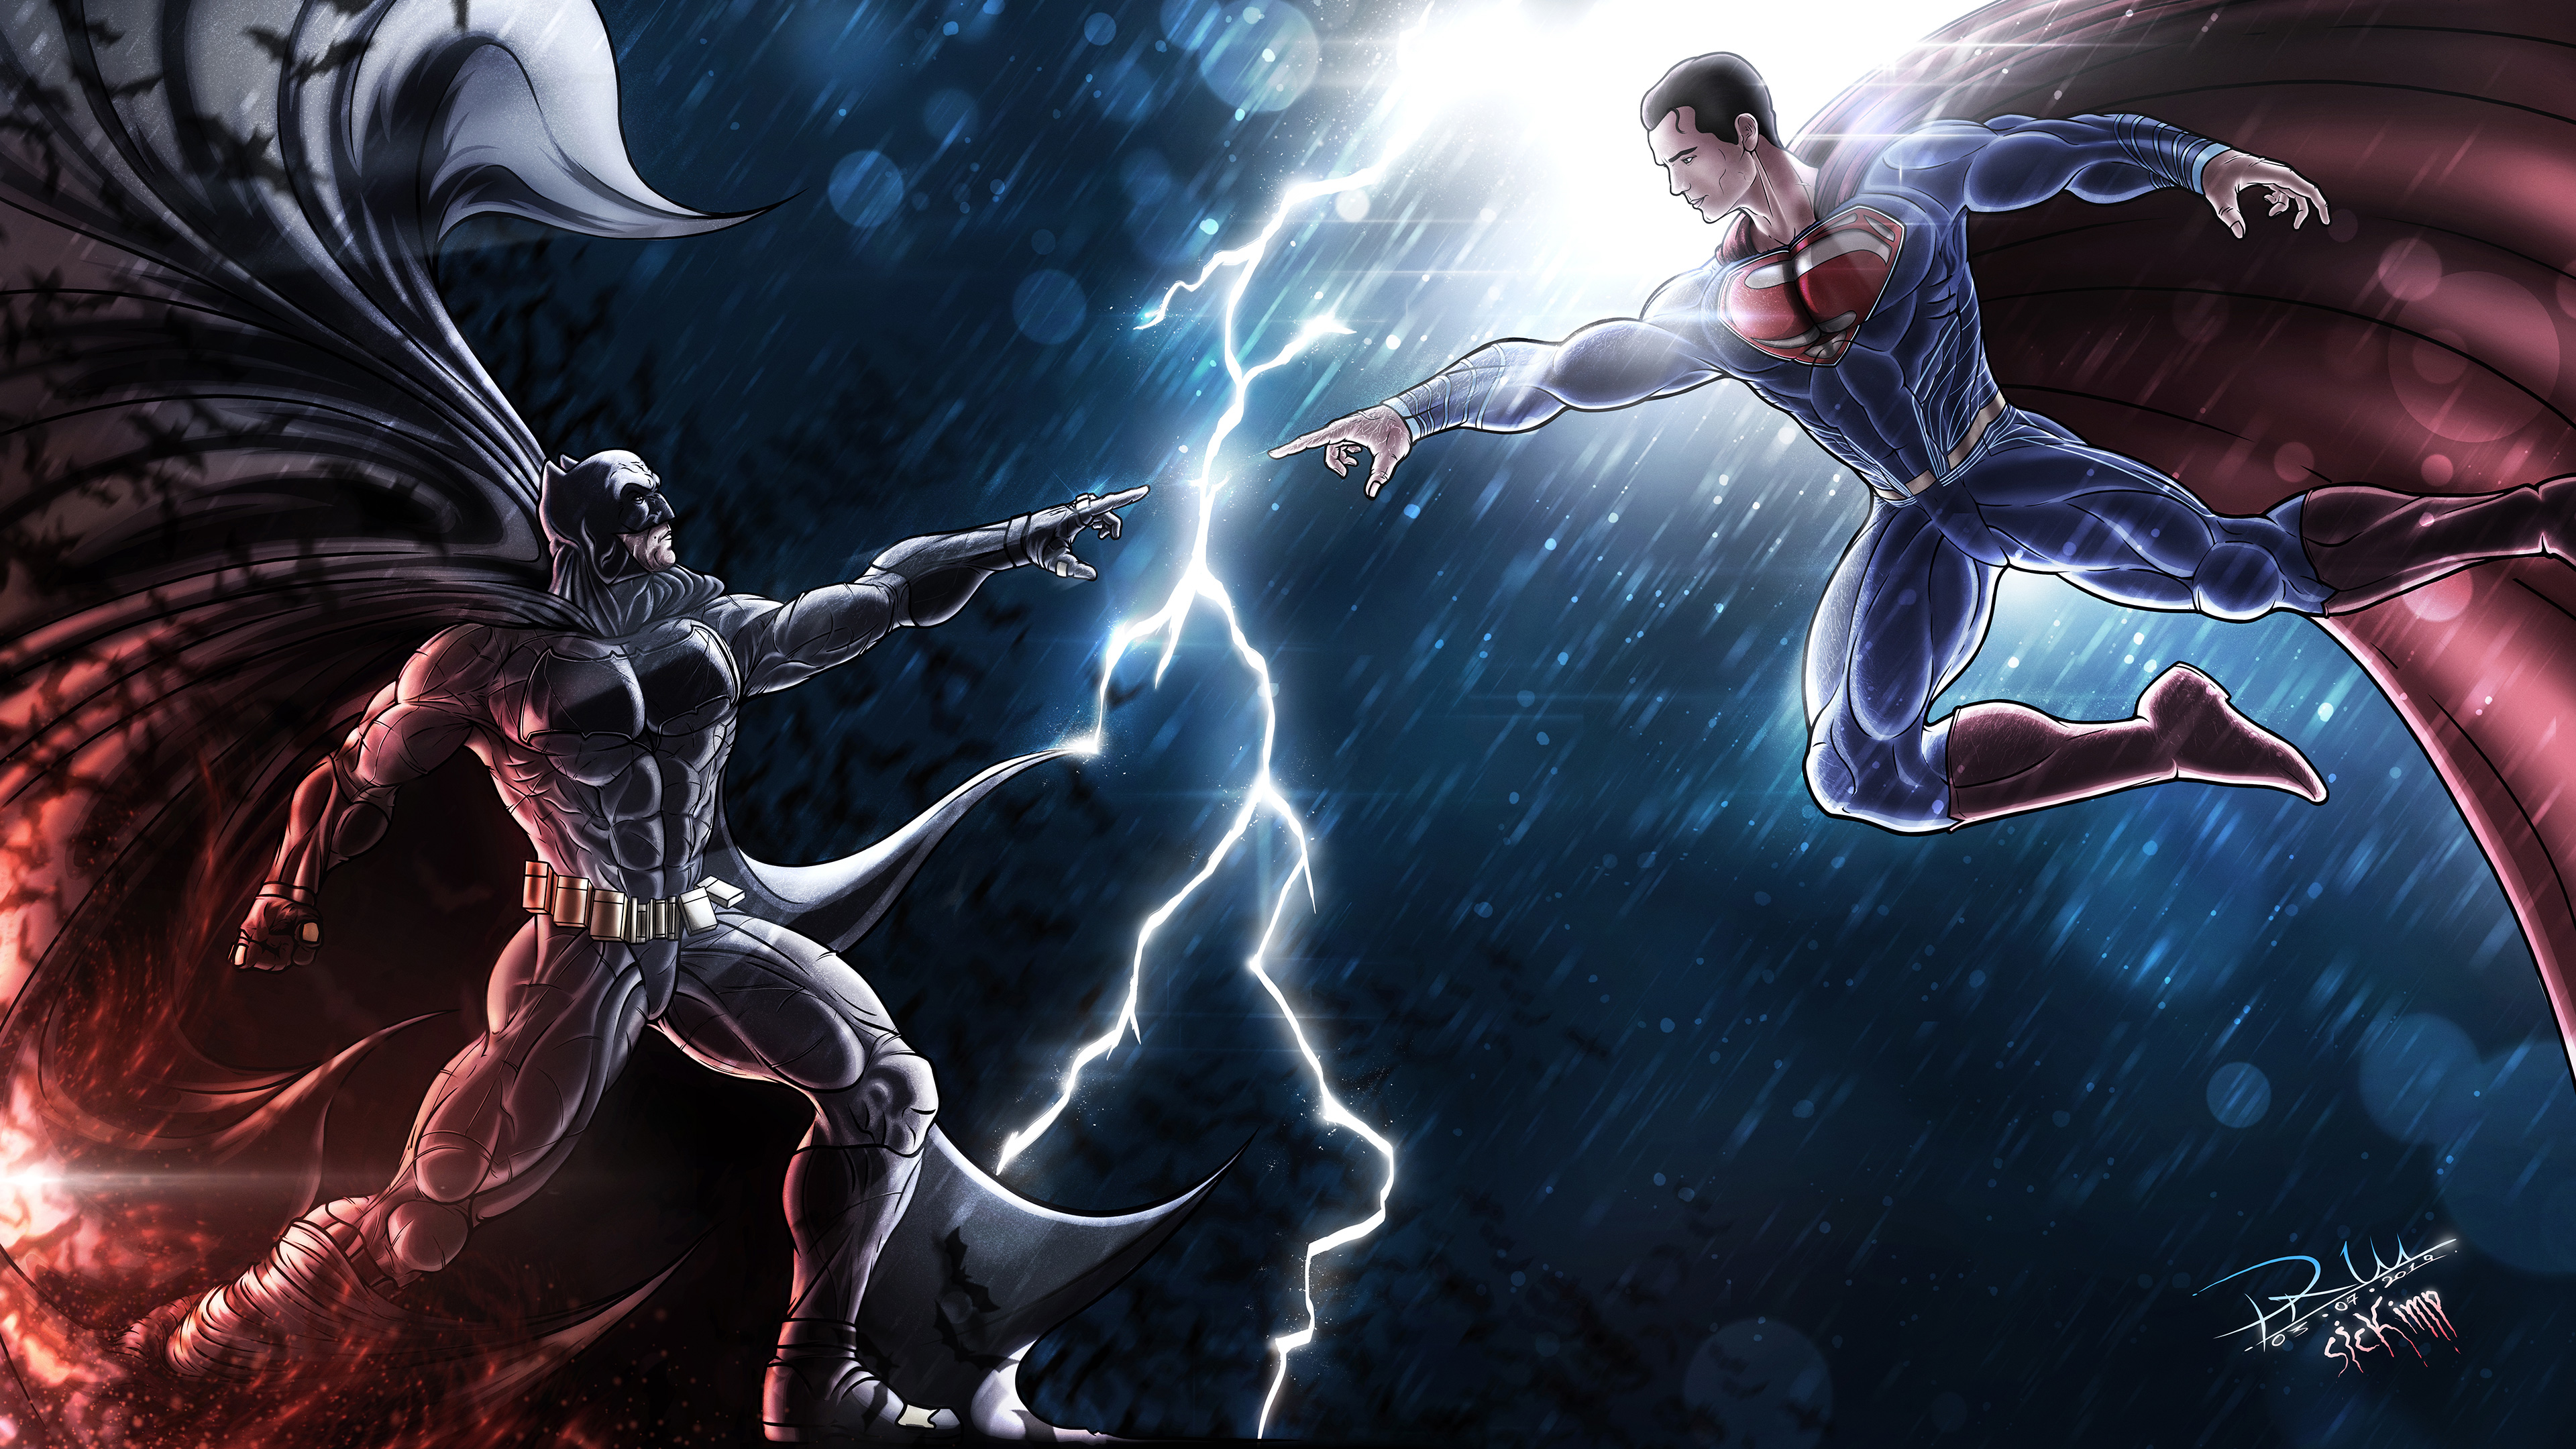 DC Batman vs Superman Wallpaper, HD Superheroes 4K Wallpapers, Images ...